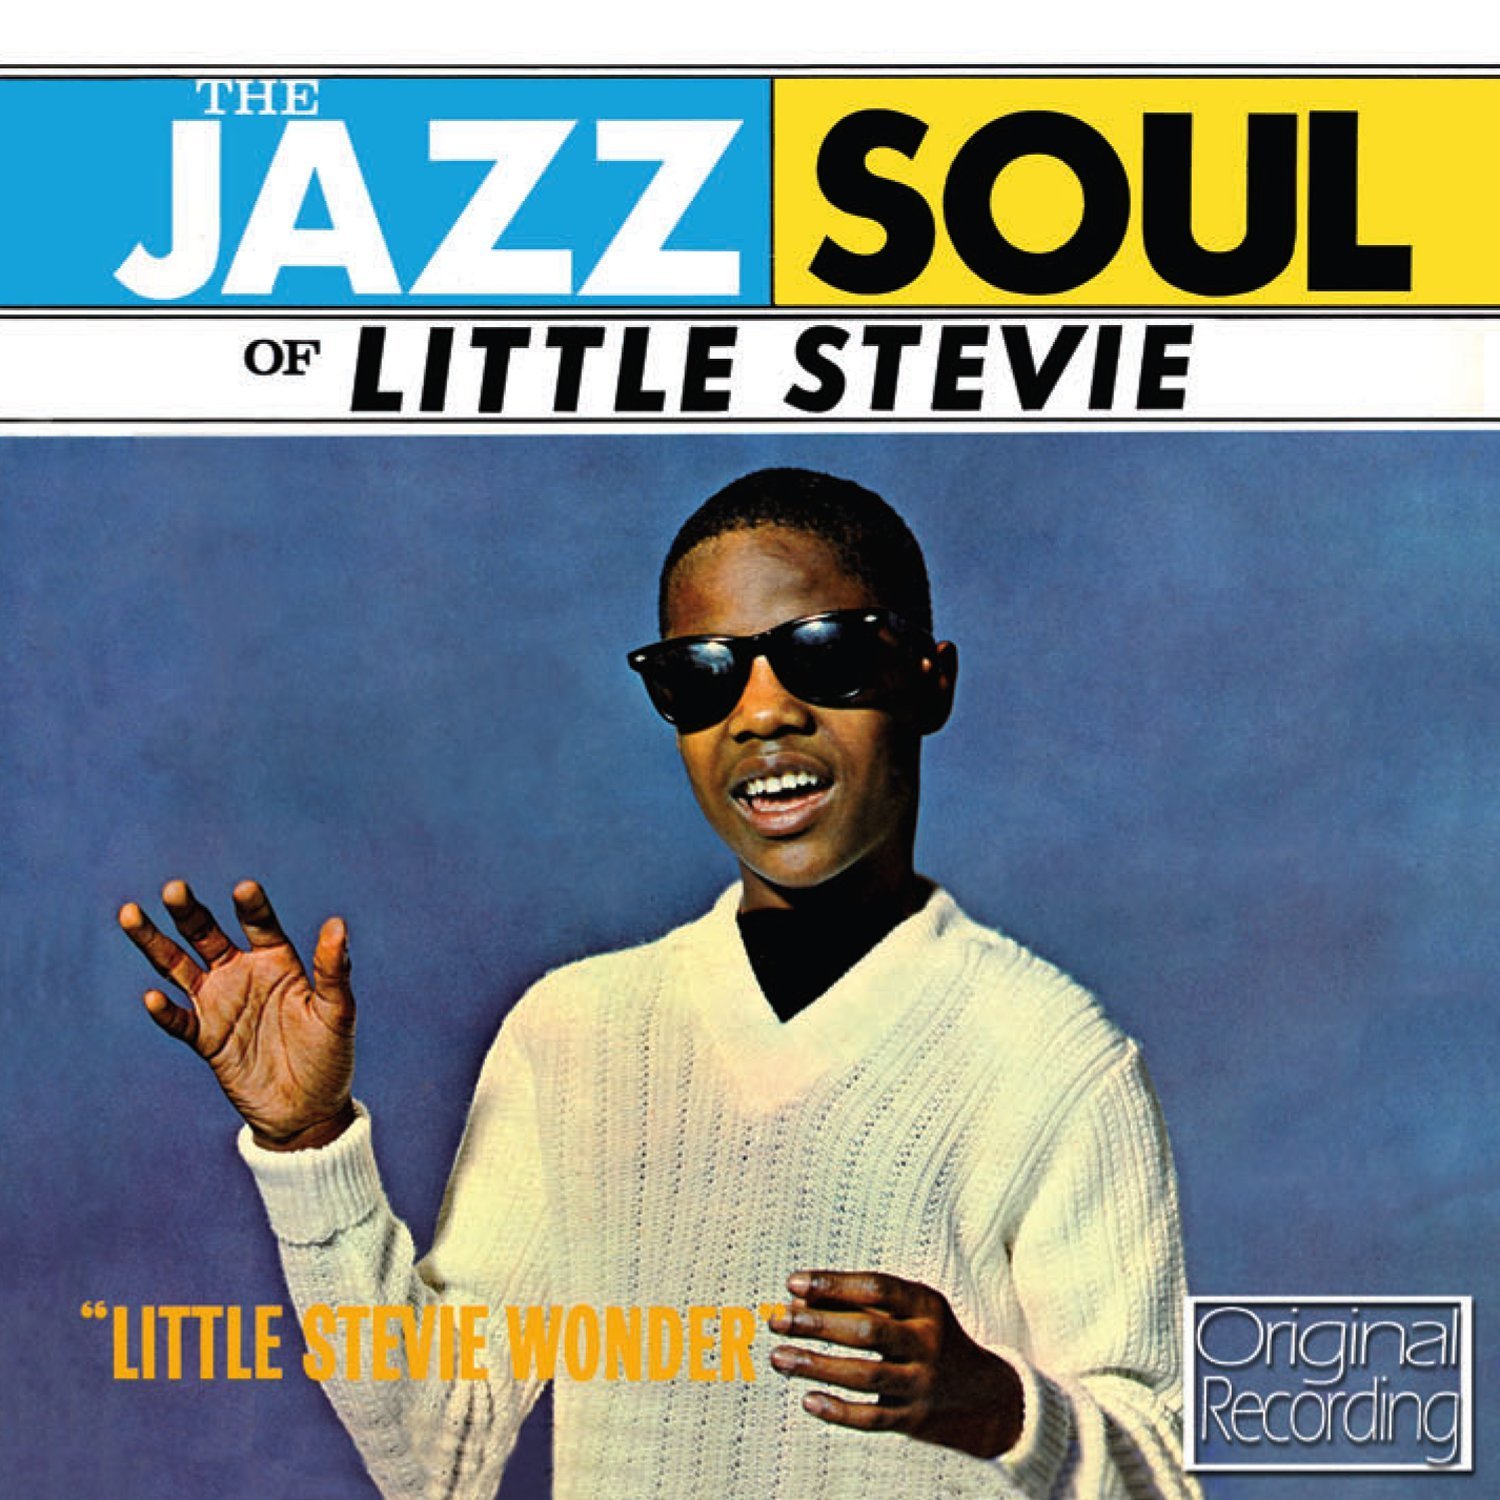 Stevie Wonder - The Jazz Soul Of Little Stevie (1962)